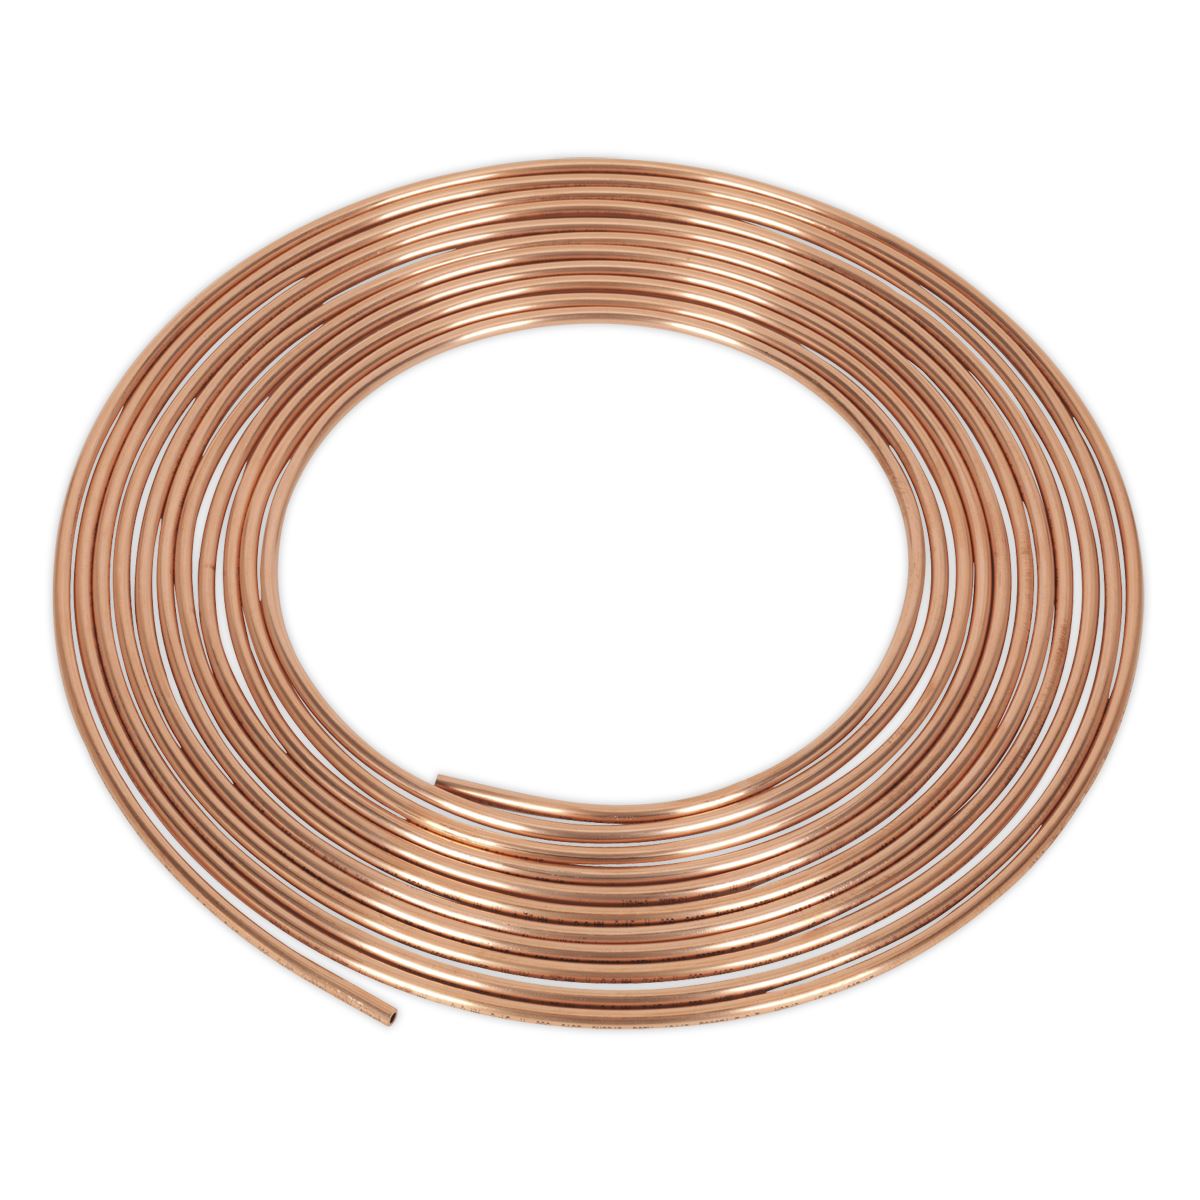 Sealey Brake Pipe Copper Tubing 22 Gauge 3/16" x 25ft BS EN 12449 C106